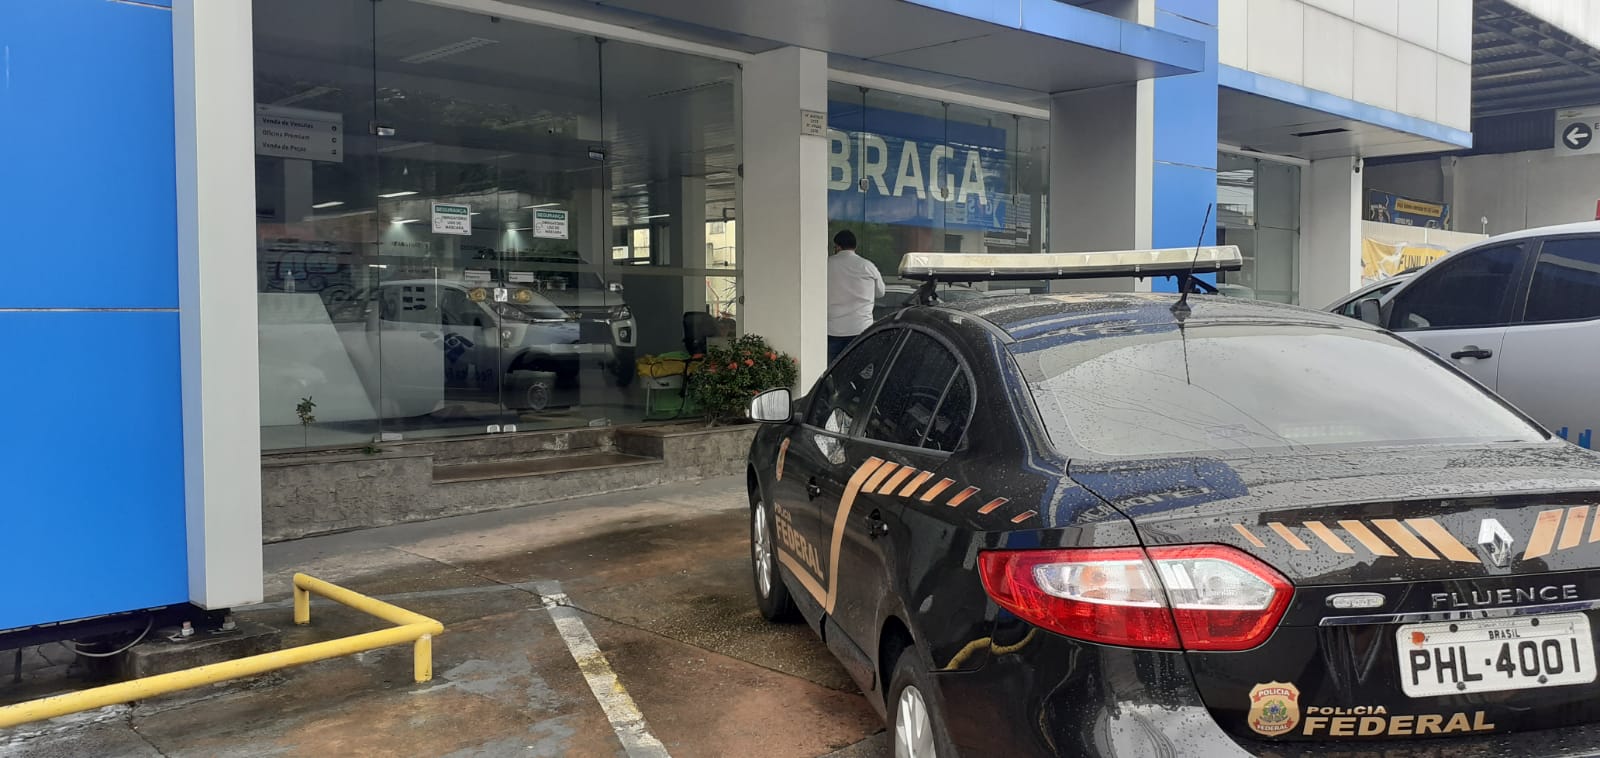 Loja da família de Eduardo Braga é principal alvo de operação federal no AM